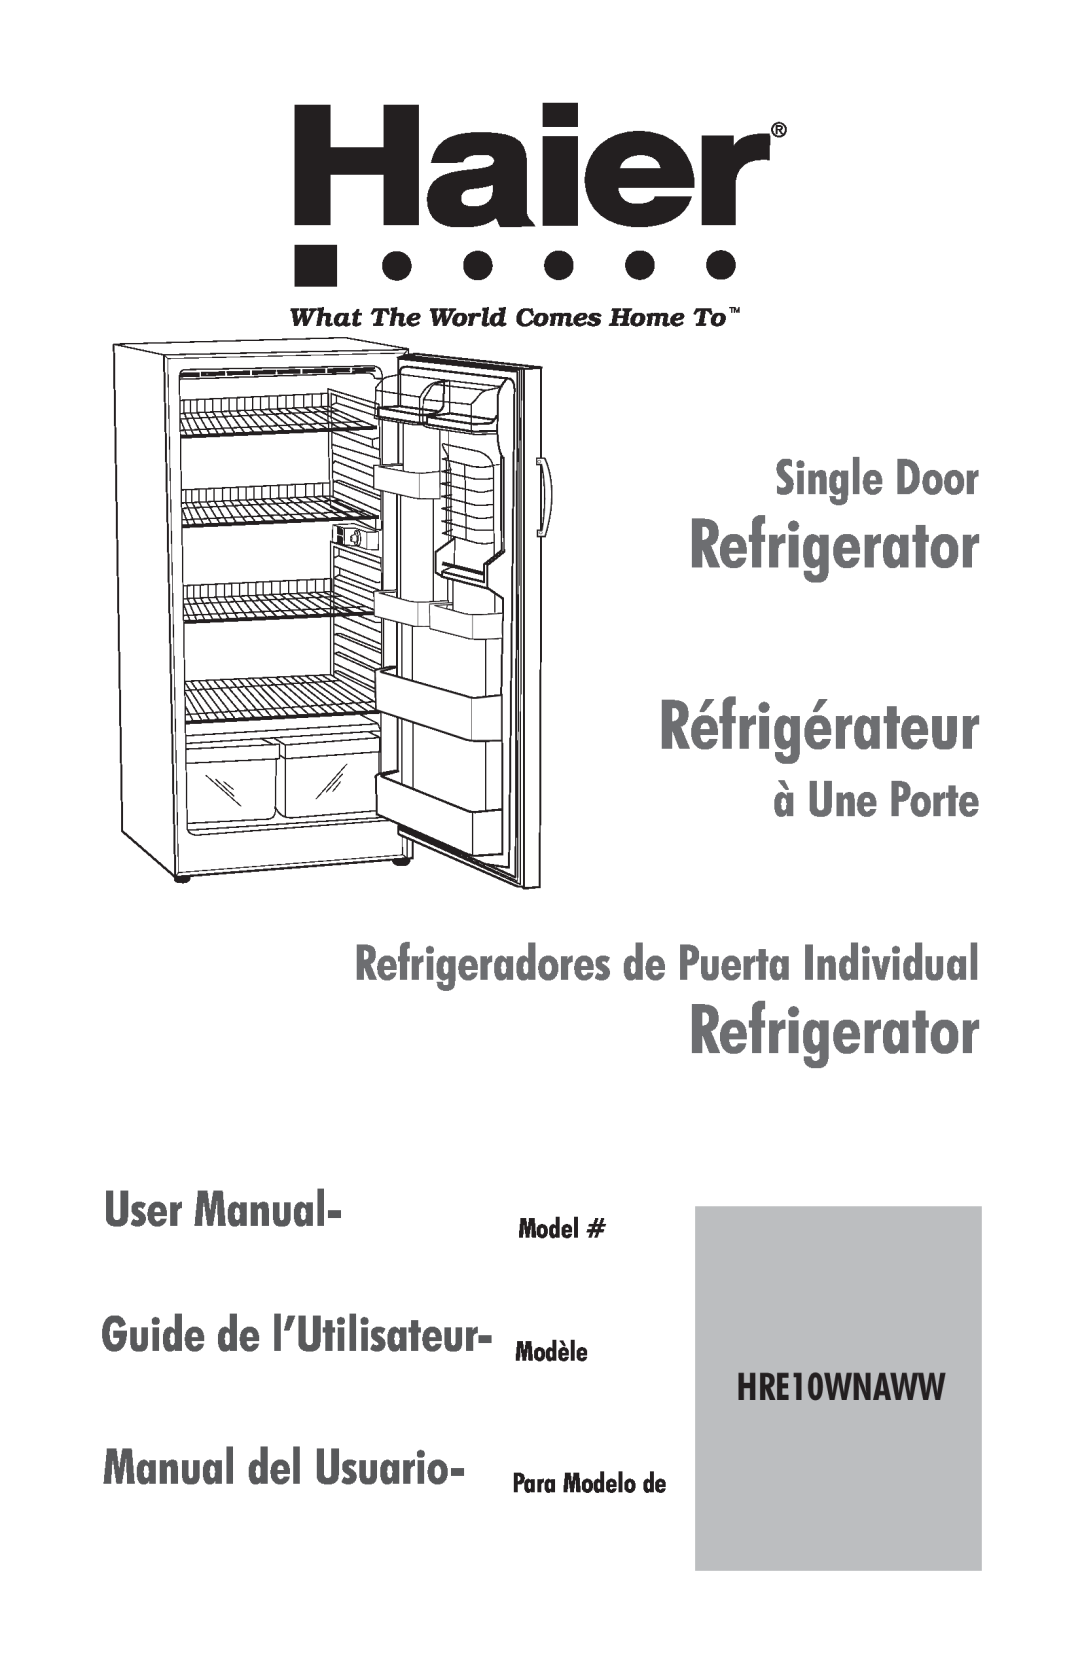 Haier HRE10WNAWW user manual Model # Modèle, Refrigerator Réfrigérateur, Single Door, à Une Porte, Guide de l’Utilisateur 